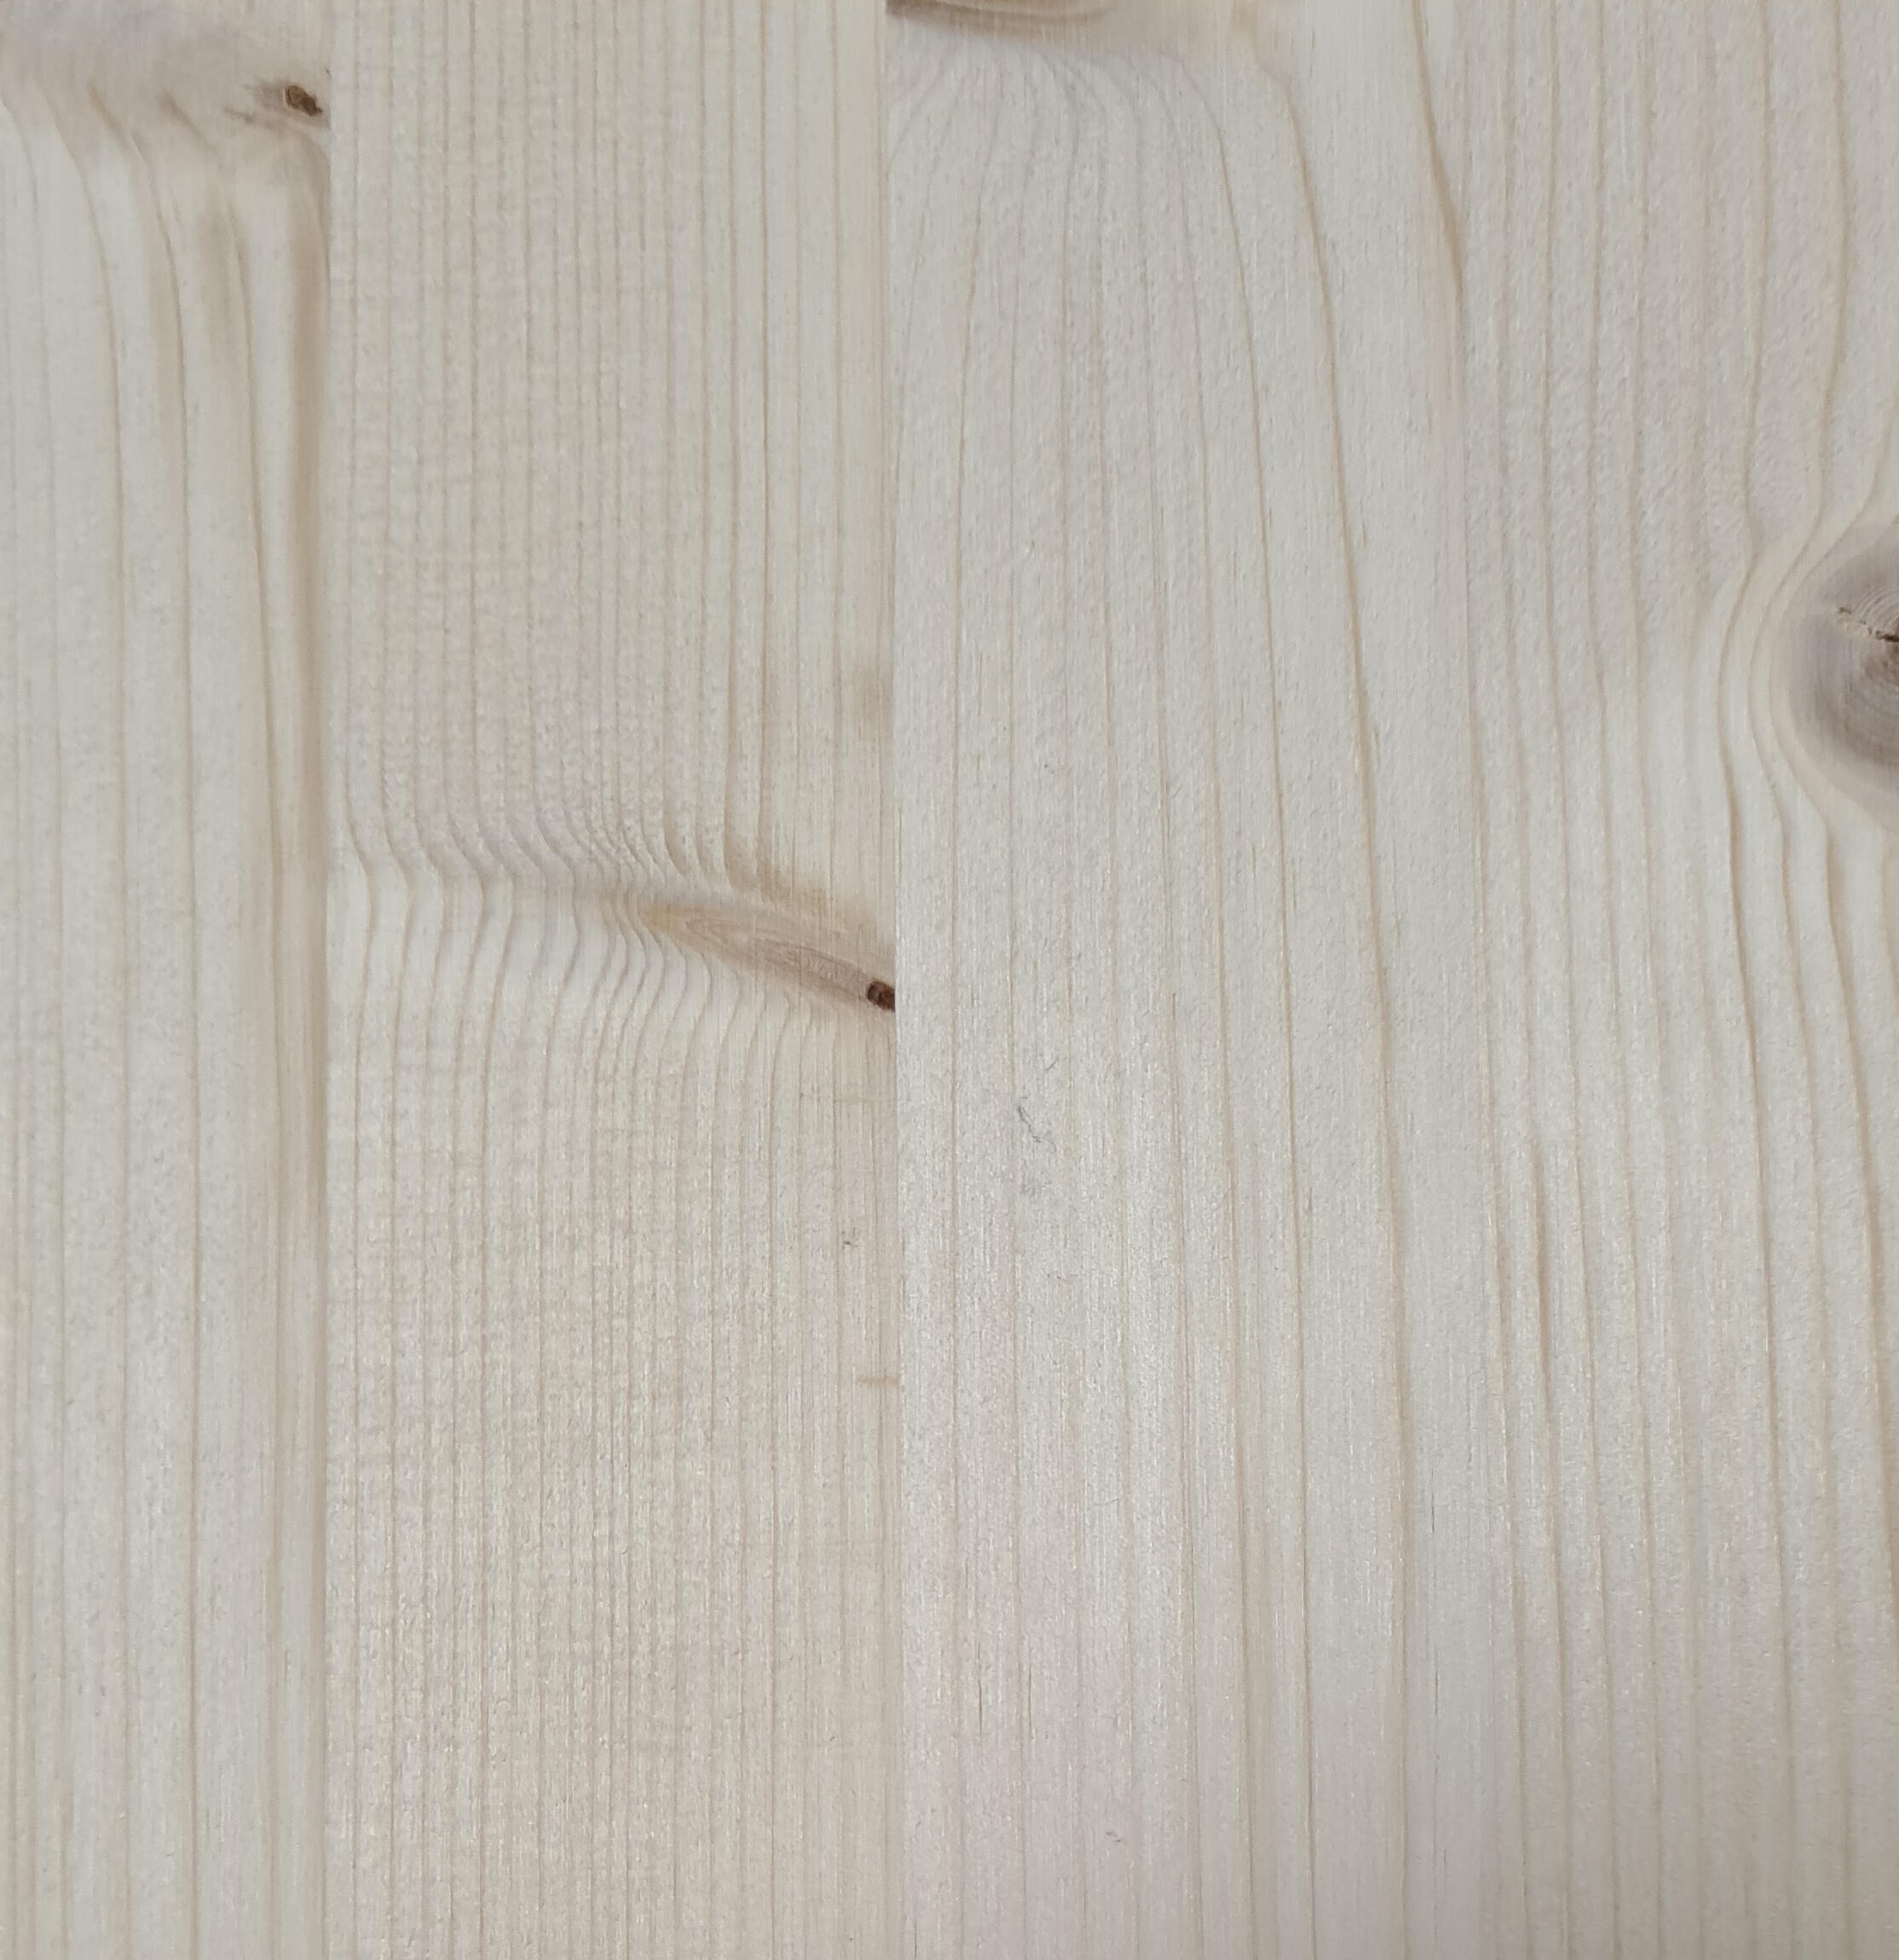 Tavola legno lamellare abete 1° scelta 200 x 20 cm Sp 14 mm - 2